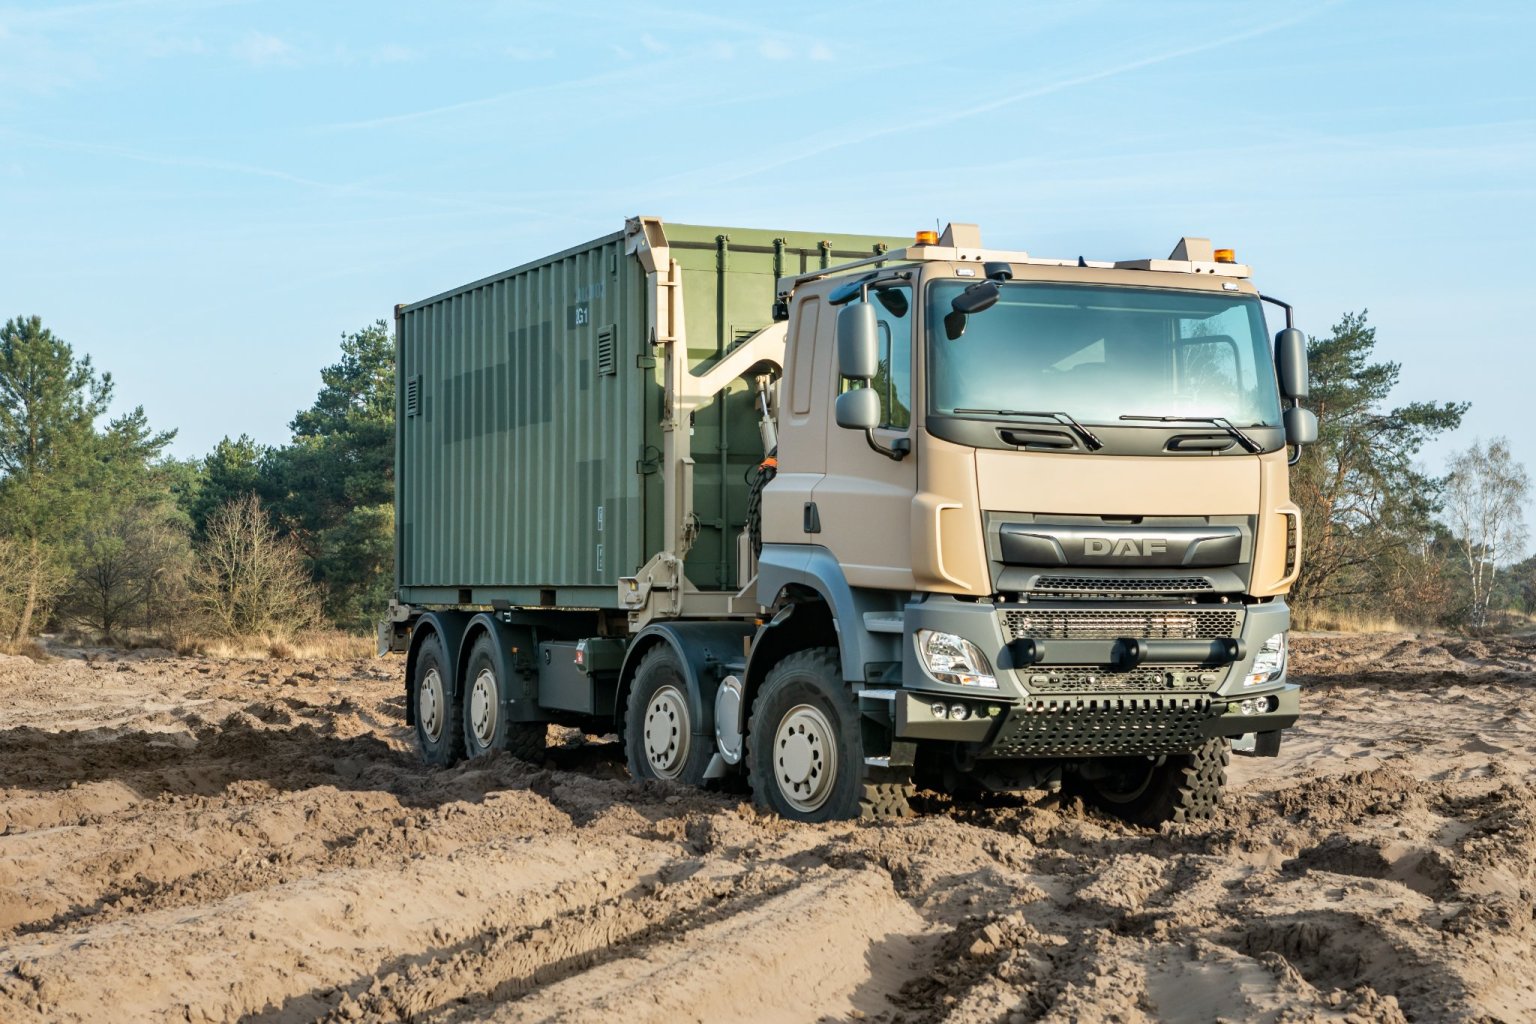 Do roku 2025 se vyrobí celkem 879 logistických nákladních vozidel na tatrováckém podvozku s centrální nosnou rourou a nezávislým zavìšením výkyvných polonáprav.